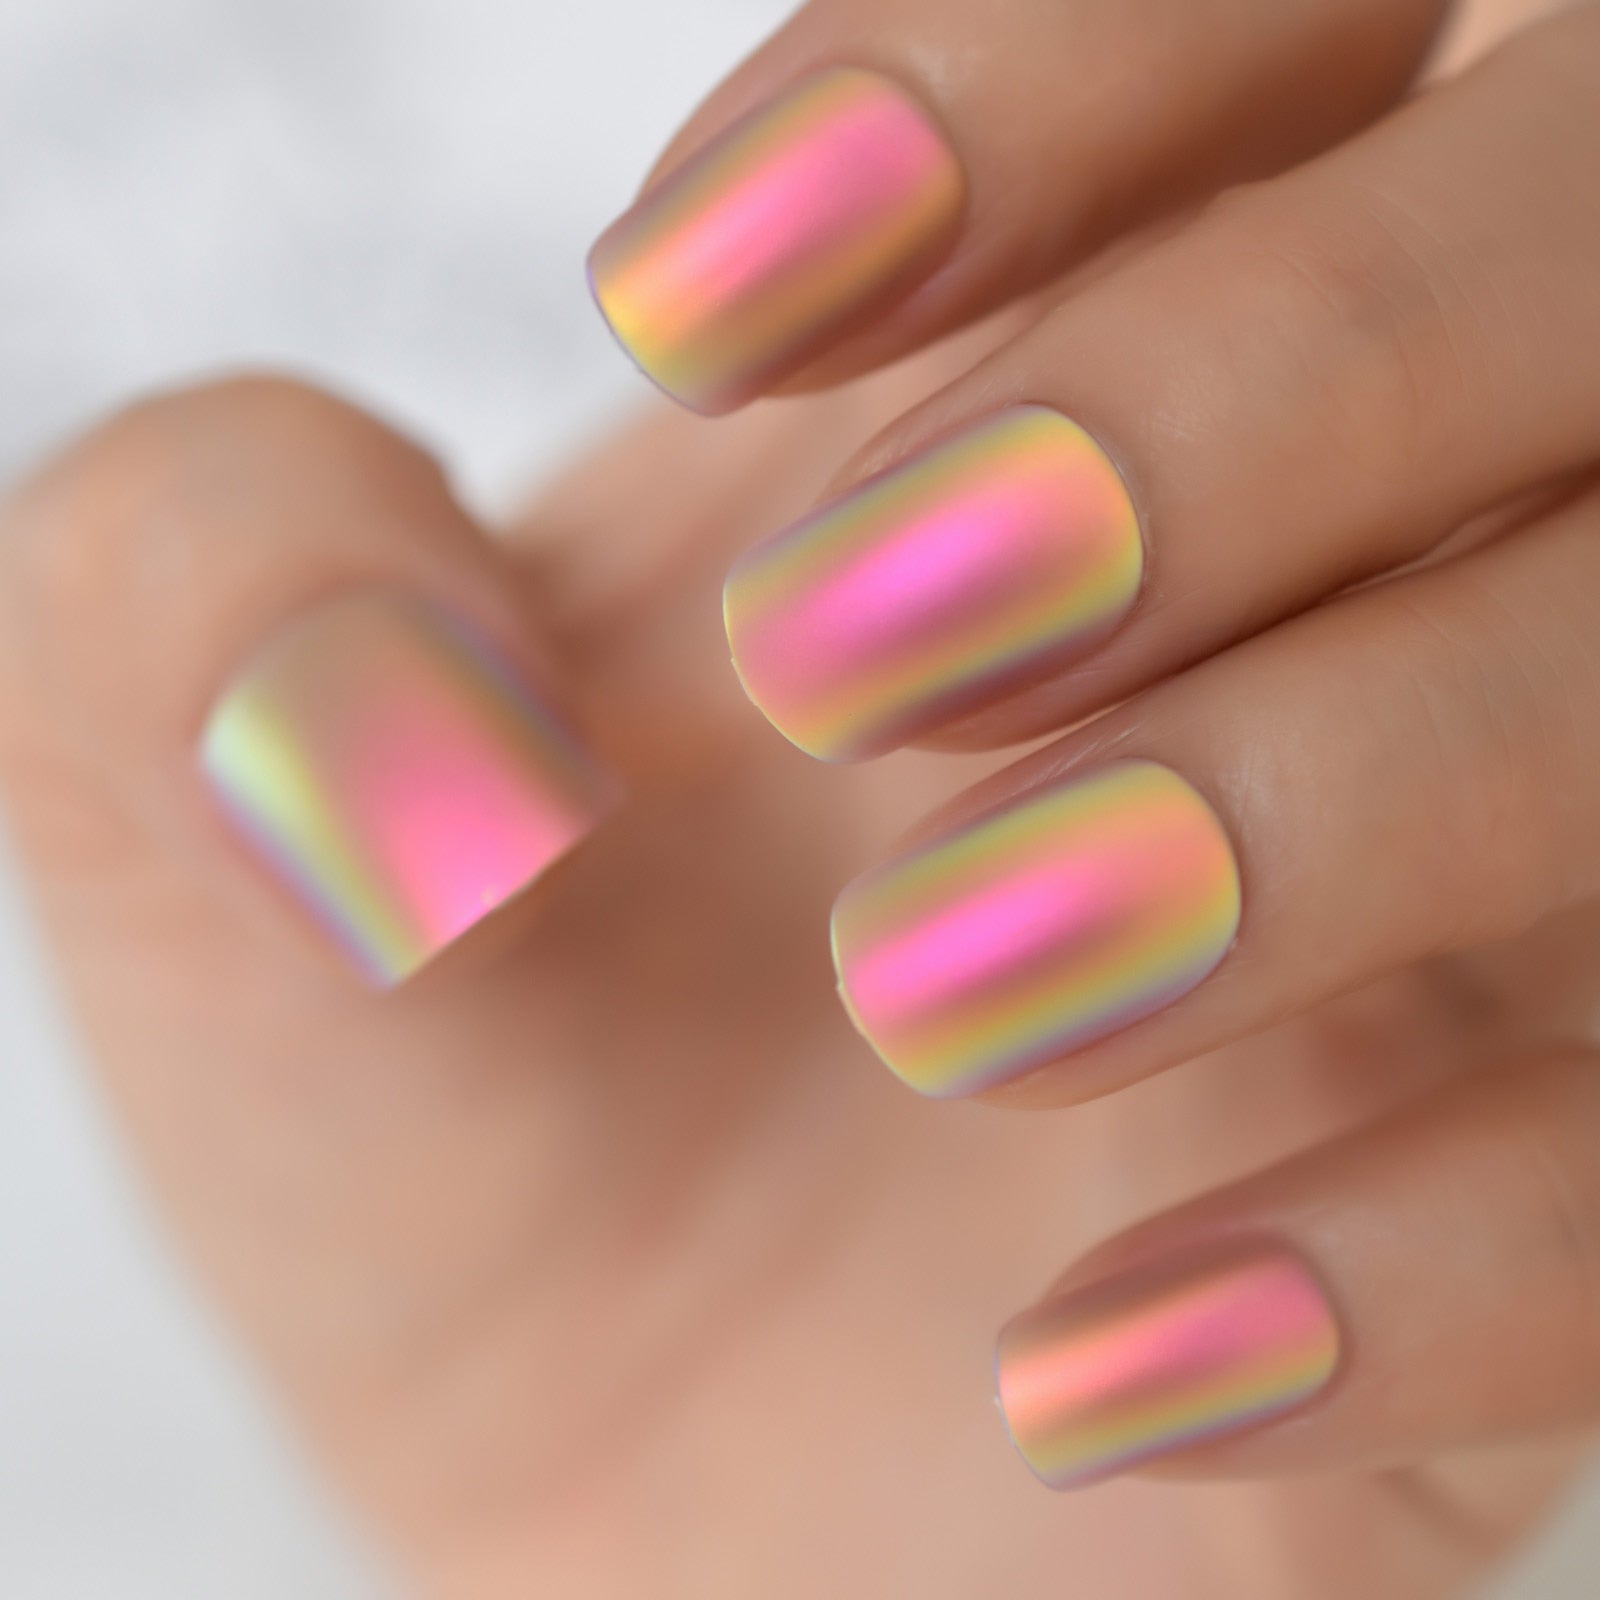 Pressione Metálica Matte curta em Nails Holográfica Multi Color Shiny Squavol Unhas falsas unhas falsas dicas de manicure de artes de arte